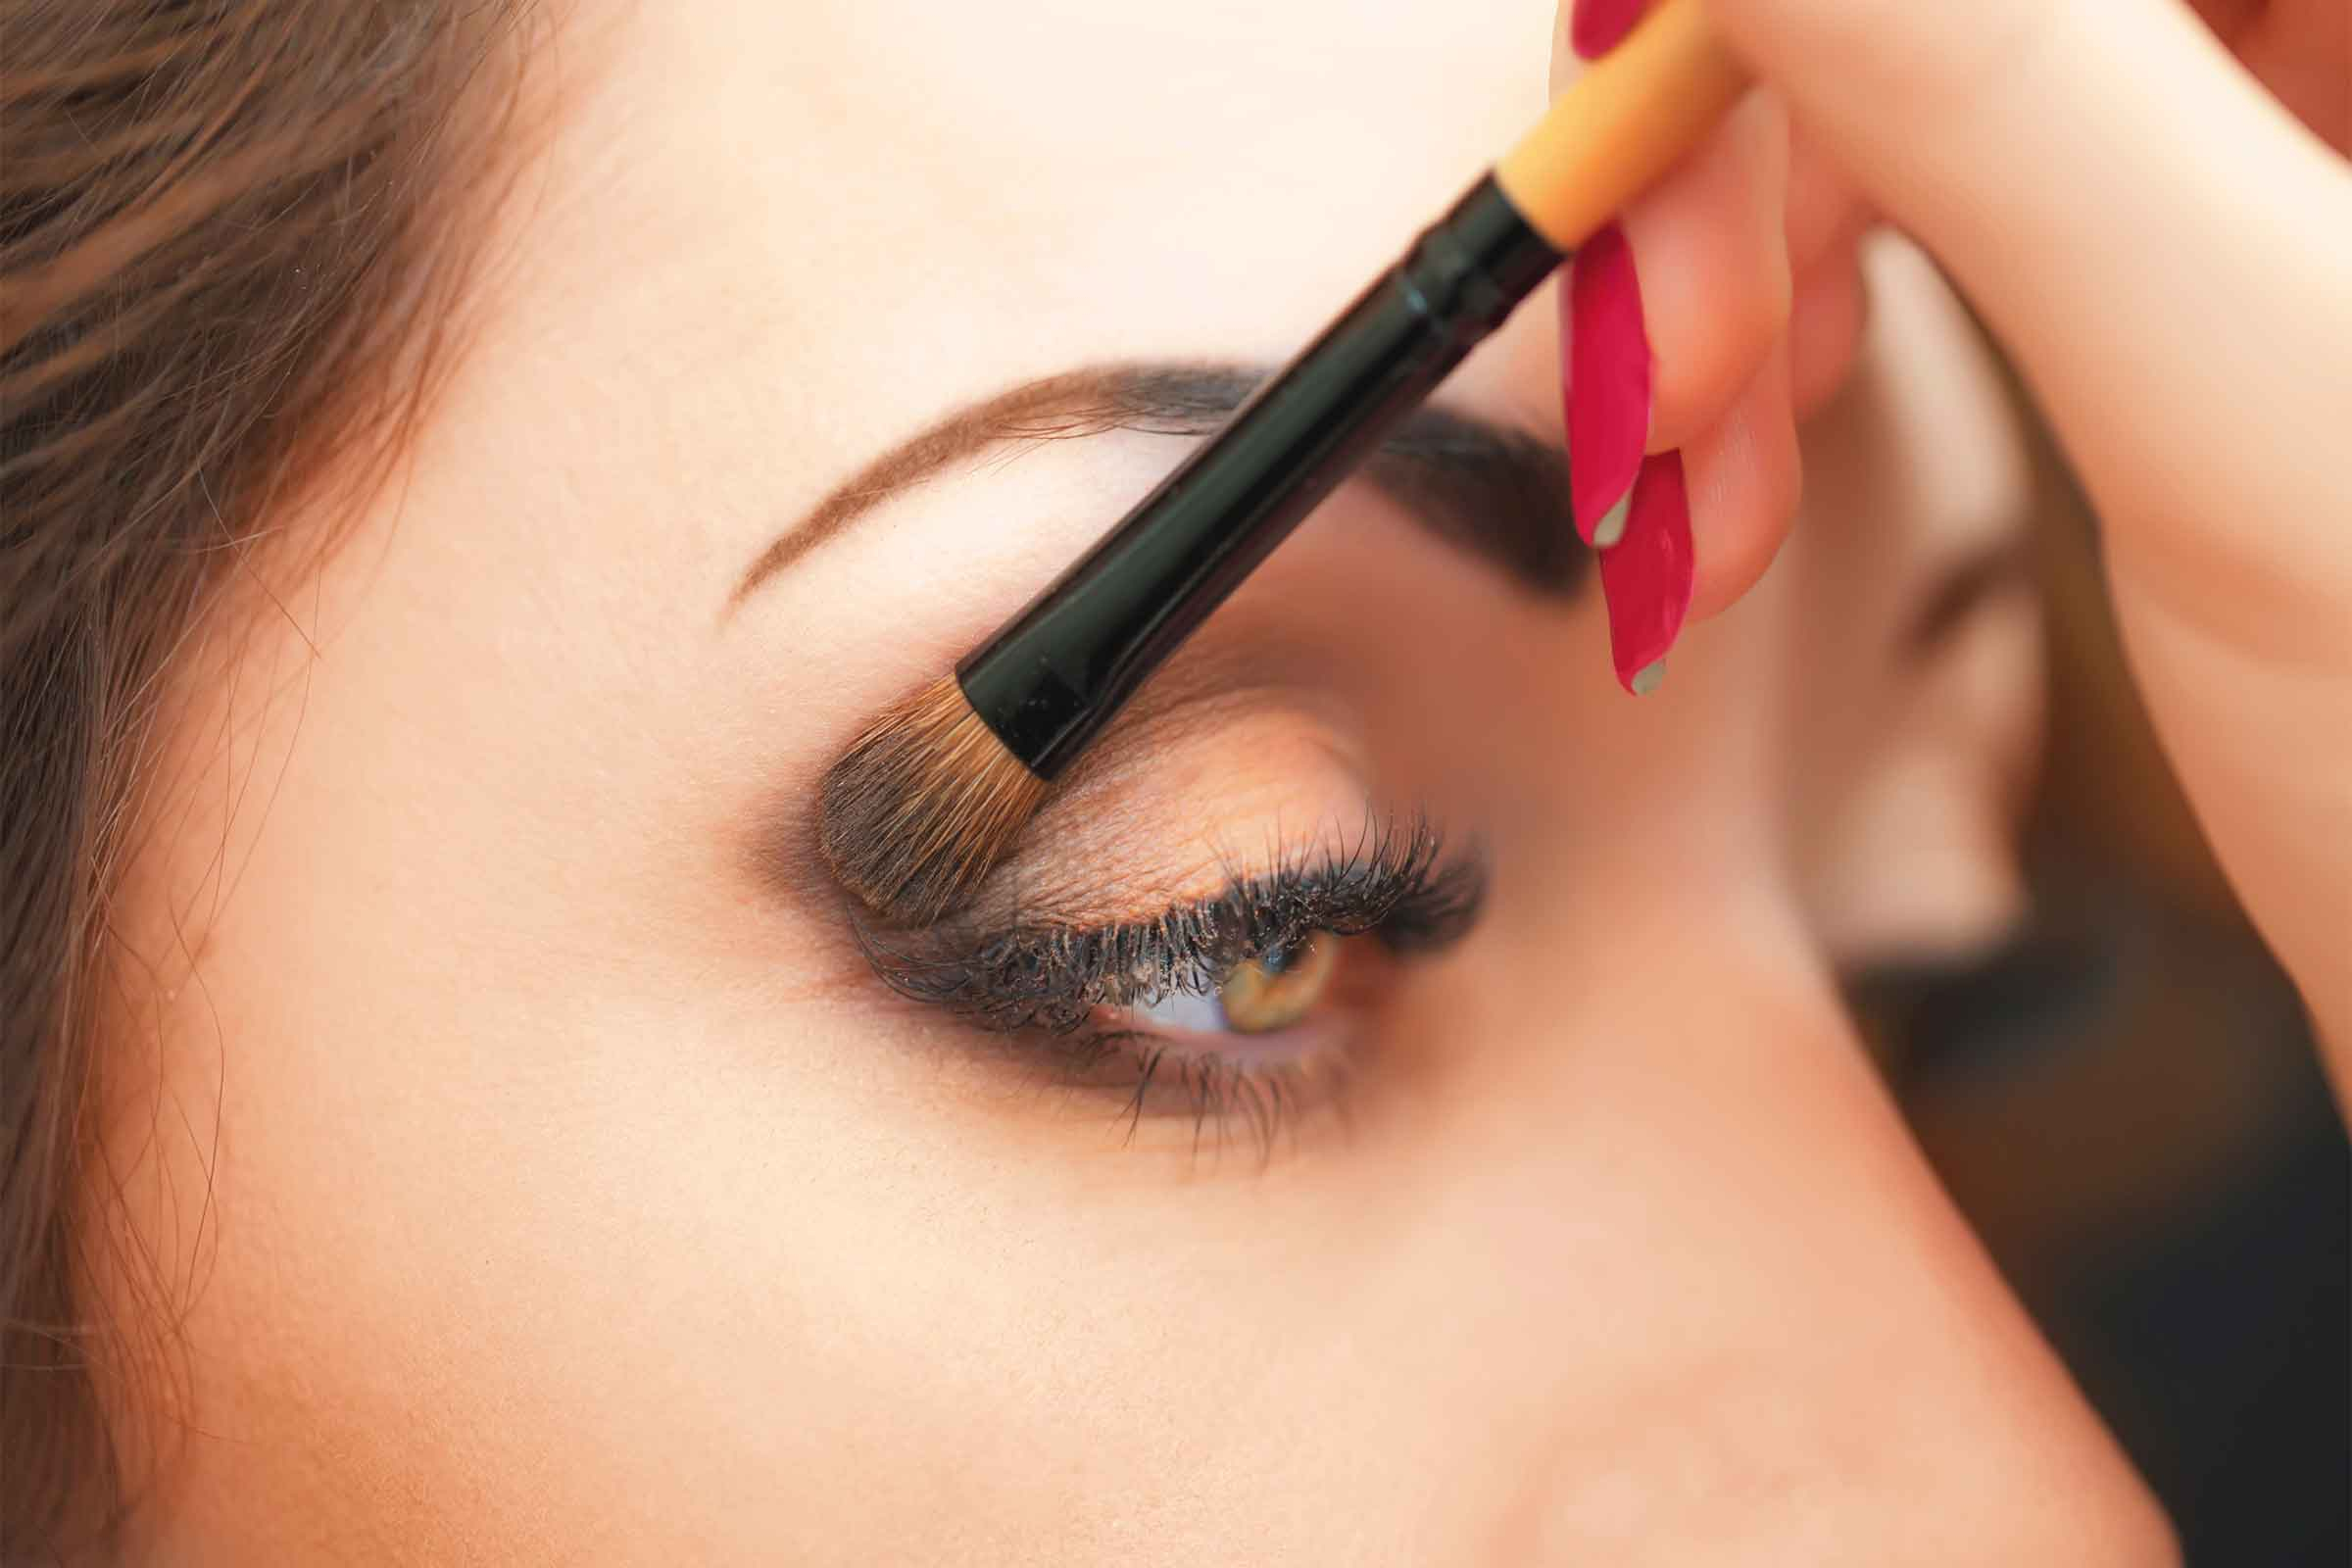 Simple Eye Makeup Eye Makeup Tips 7 Ways To Make Your Eyes Pop Readers Digest